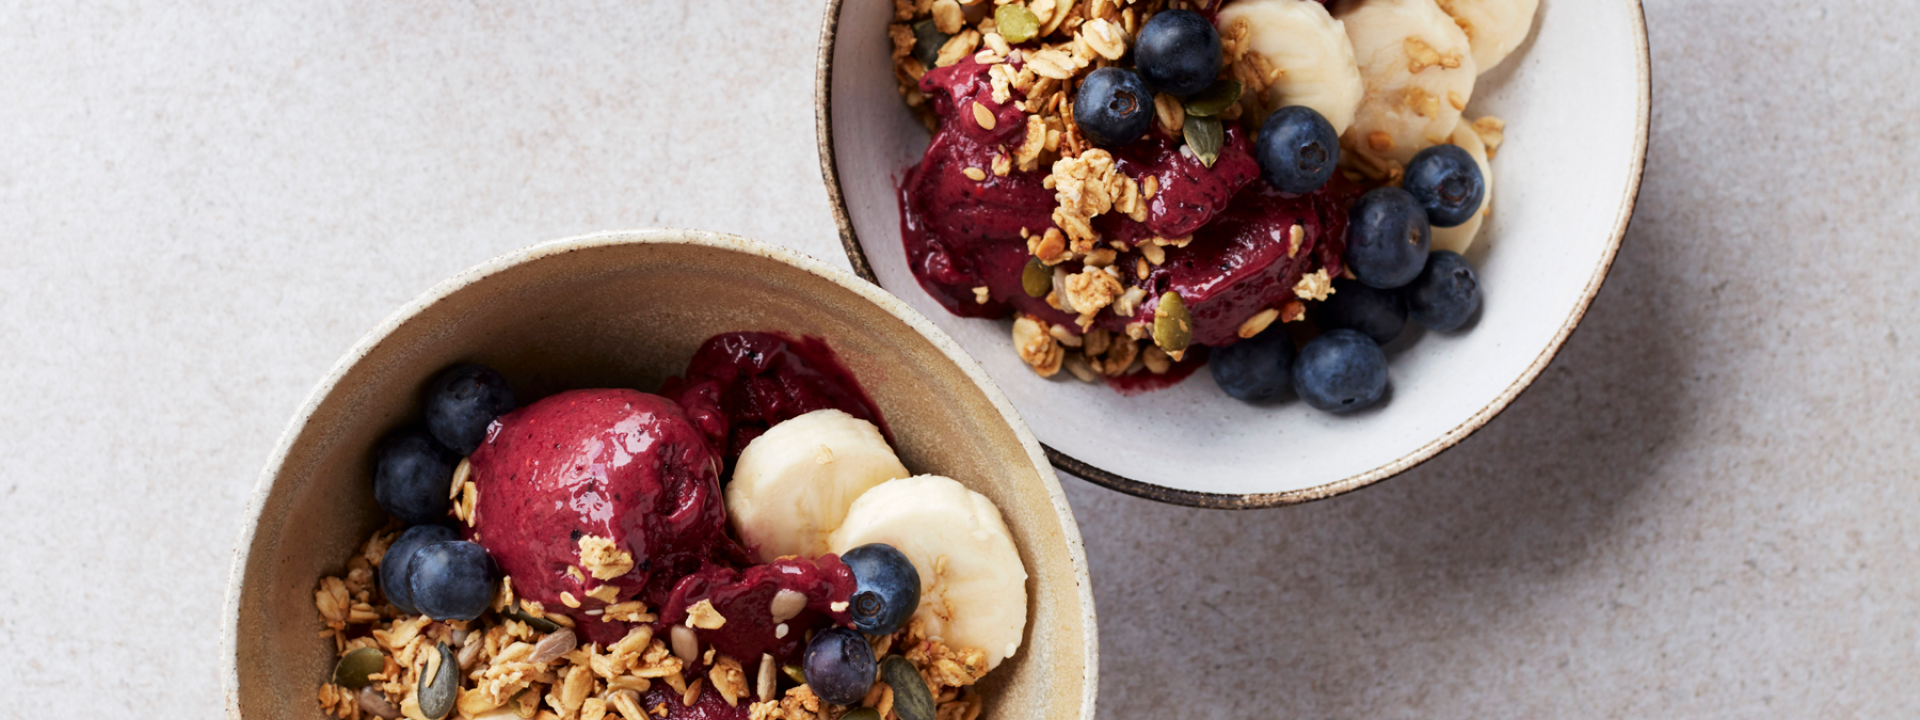 Frozen Berry Bowl Healthy Breakfast Recipes Gordon Ramsay Recipes